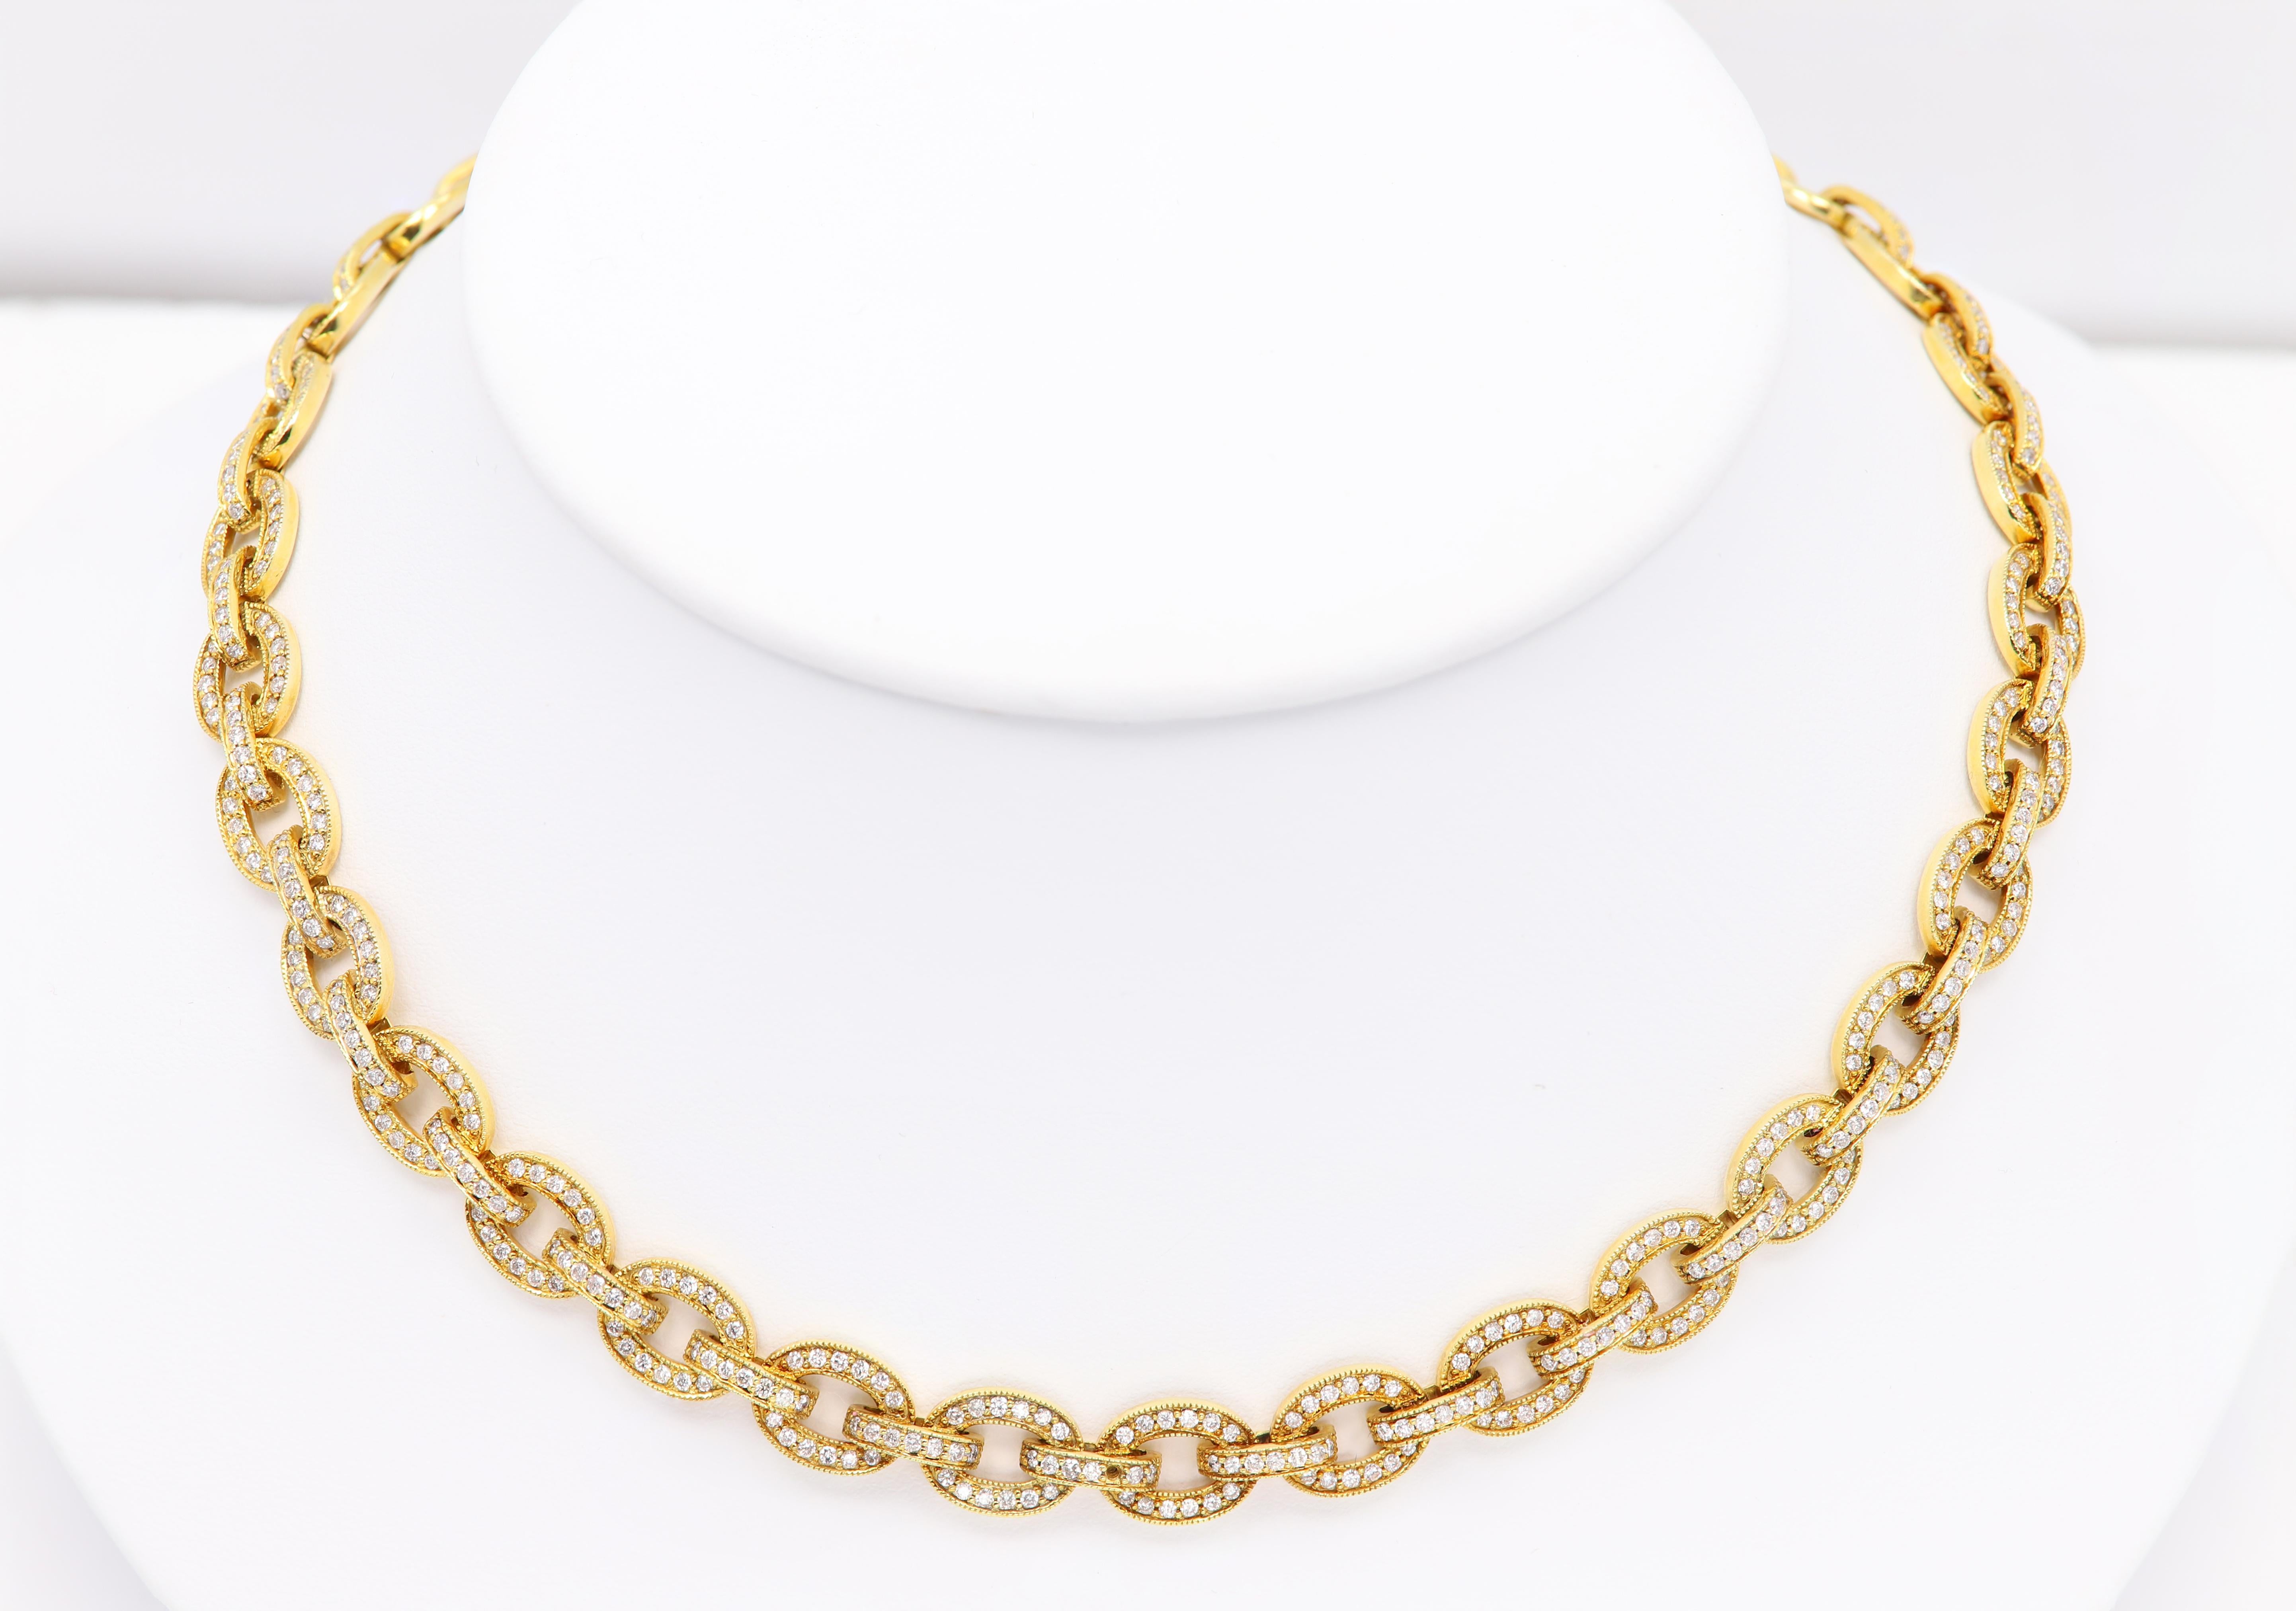 14K Gelbgold mit allen natürlichen Diamanten Halskette
Brilliante Elegante Beeindruckende Halskette.
Cluster Prong Fassung
Stil: Gliederkette 
Layout und die Halskette Rest ist einfach perfekt Kombination
Diamanten insgesamt 4,40 Karat in